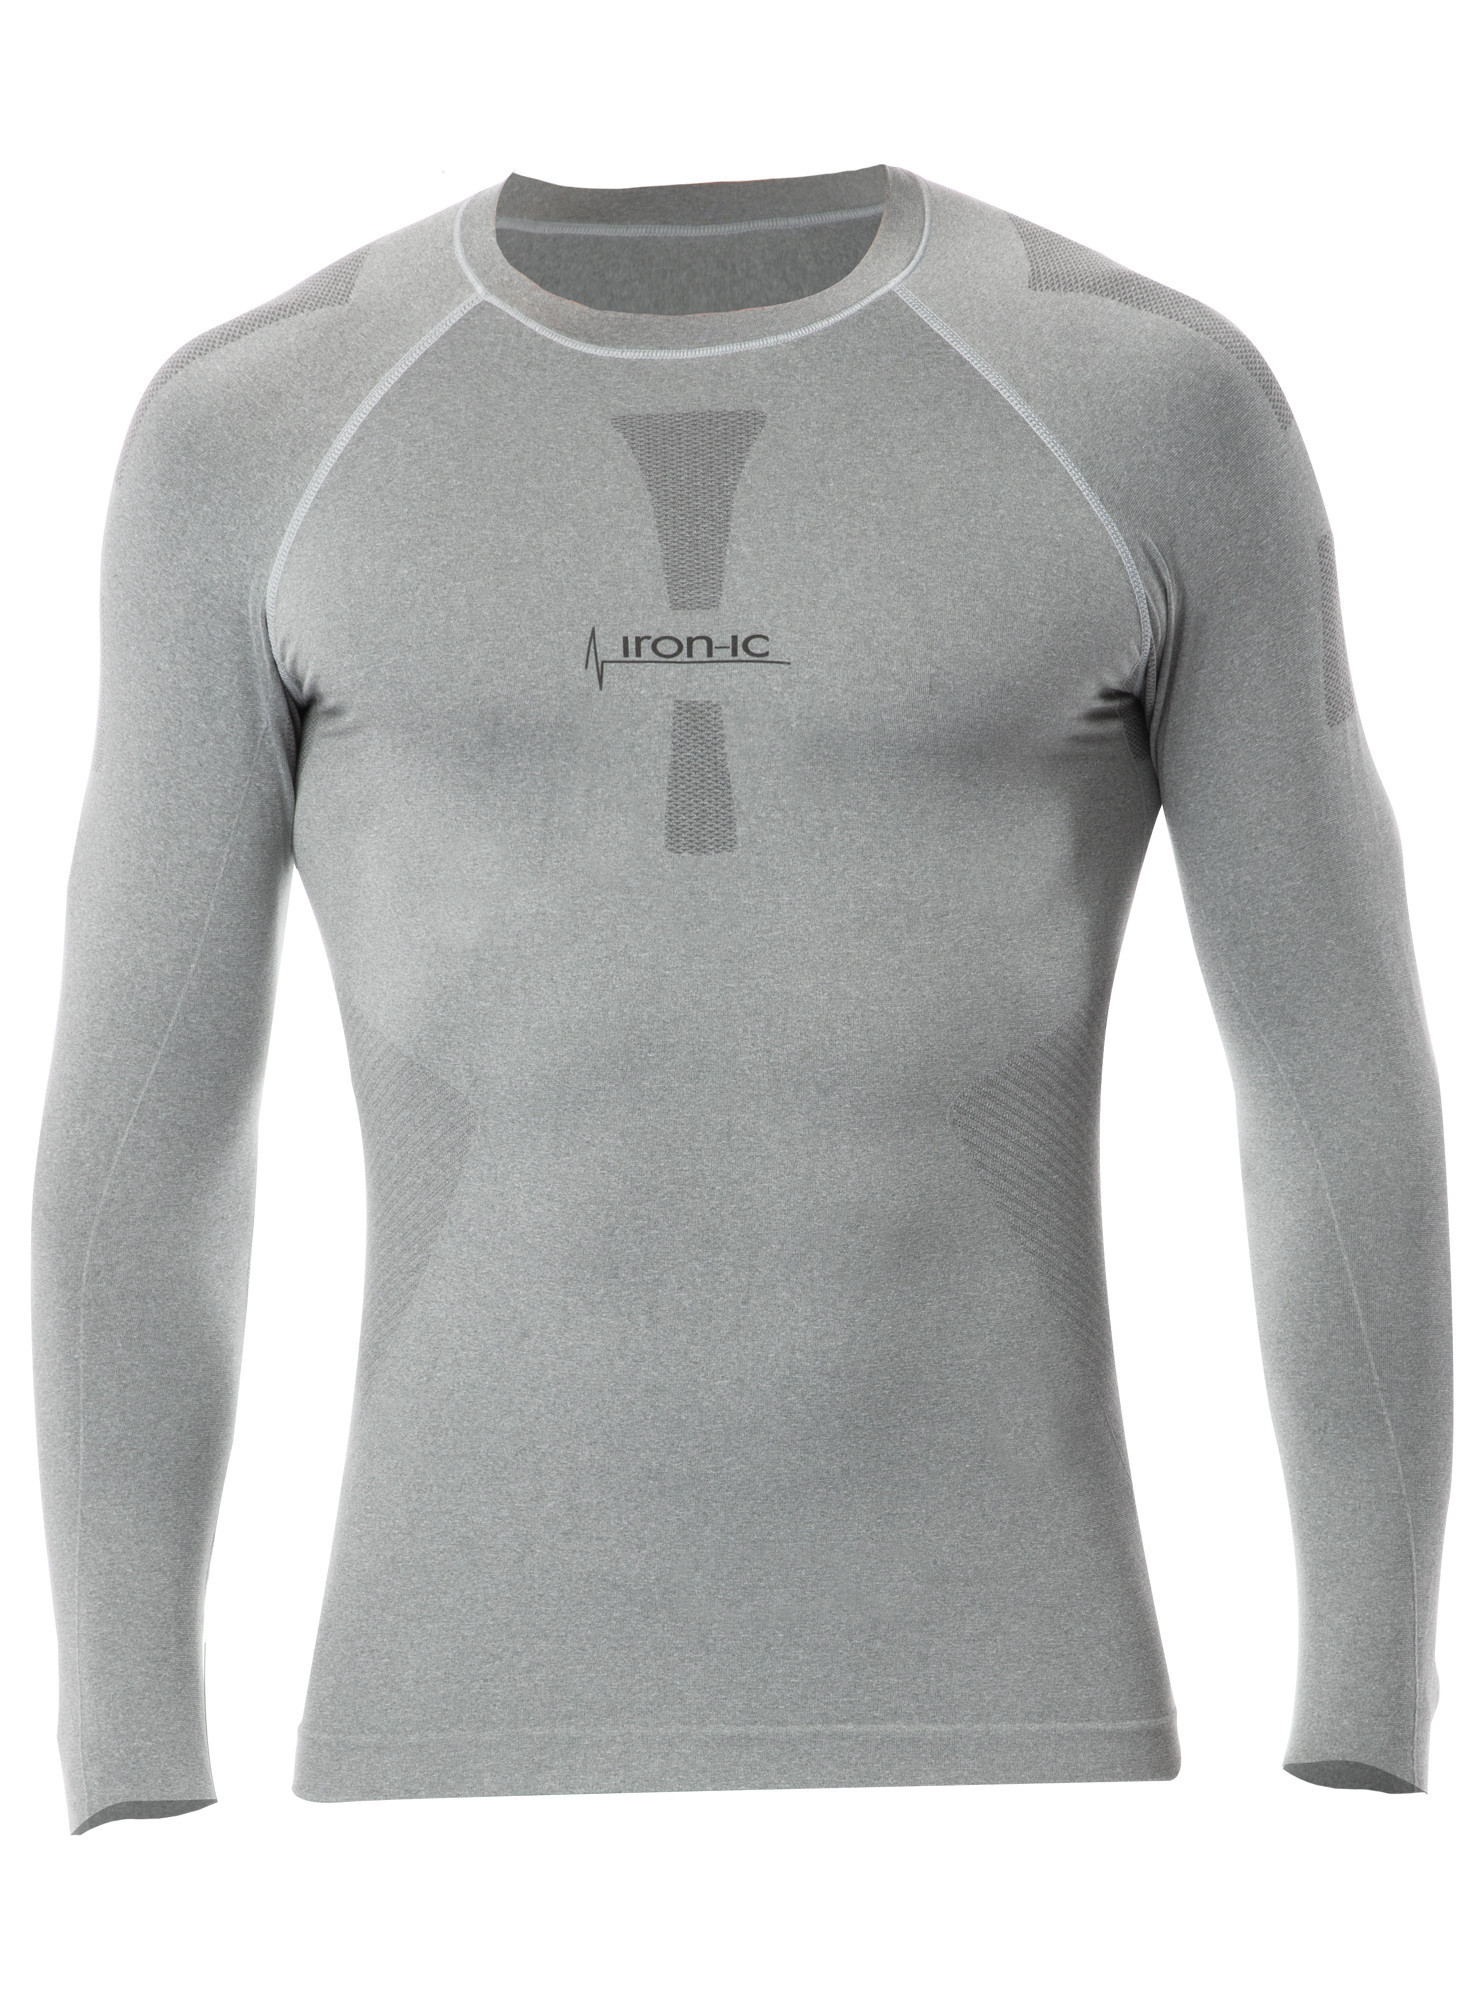 Pánské funkční tričko s dlouhým rukávem IRON-IC - šedá Barva: Šedá-IRN, Velikost: S/M